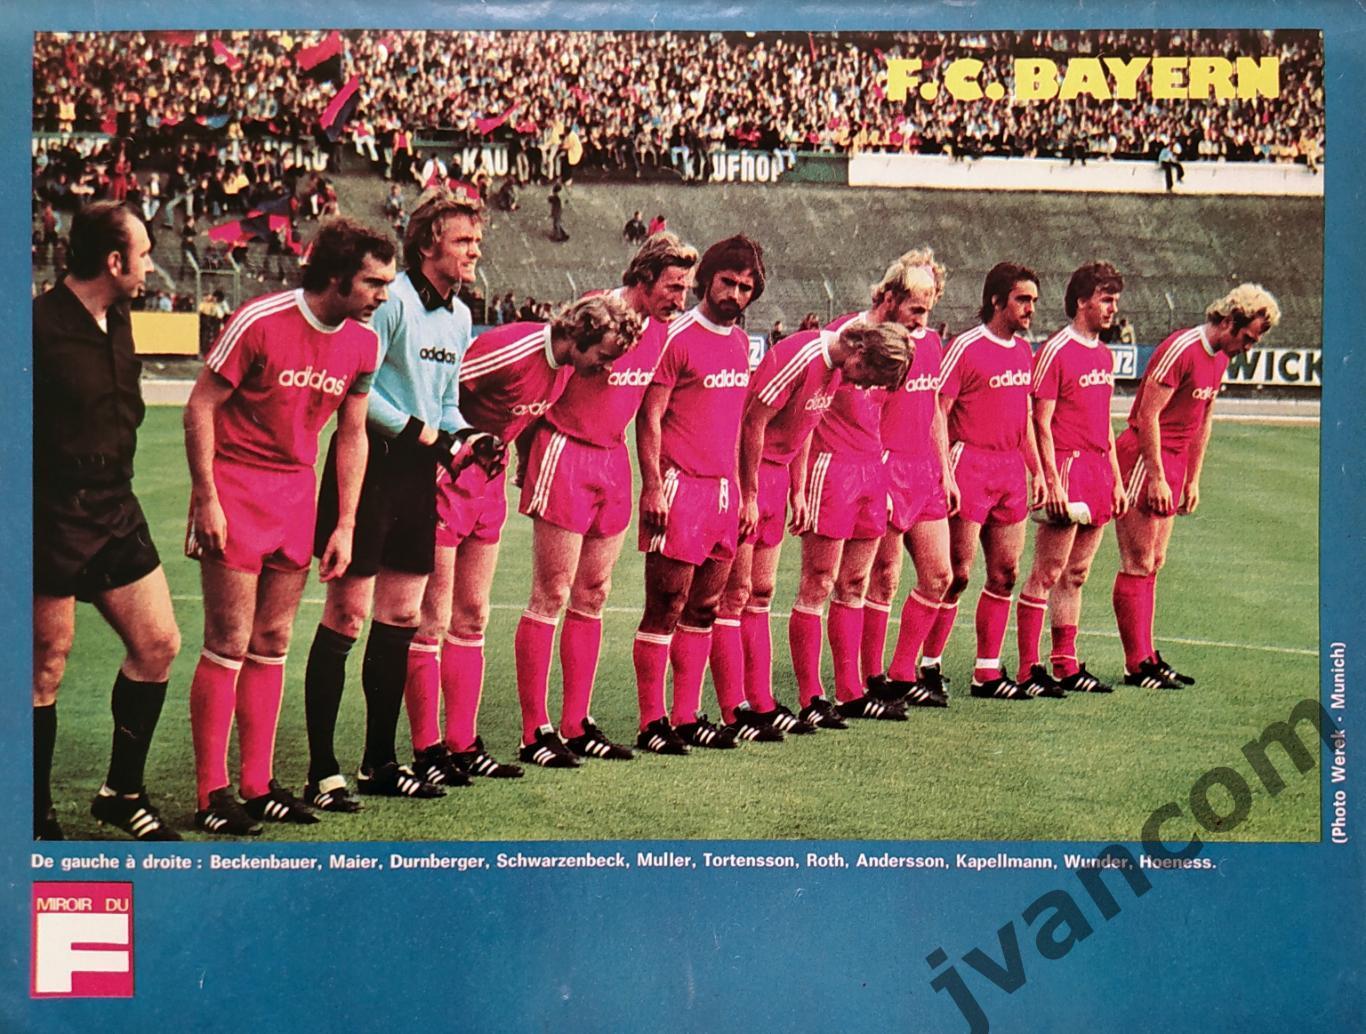 Журнал MIROIR DU FOOTBALL №240 за 1975 г. Финалисты Кубка Европейских Чемпионов. 2